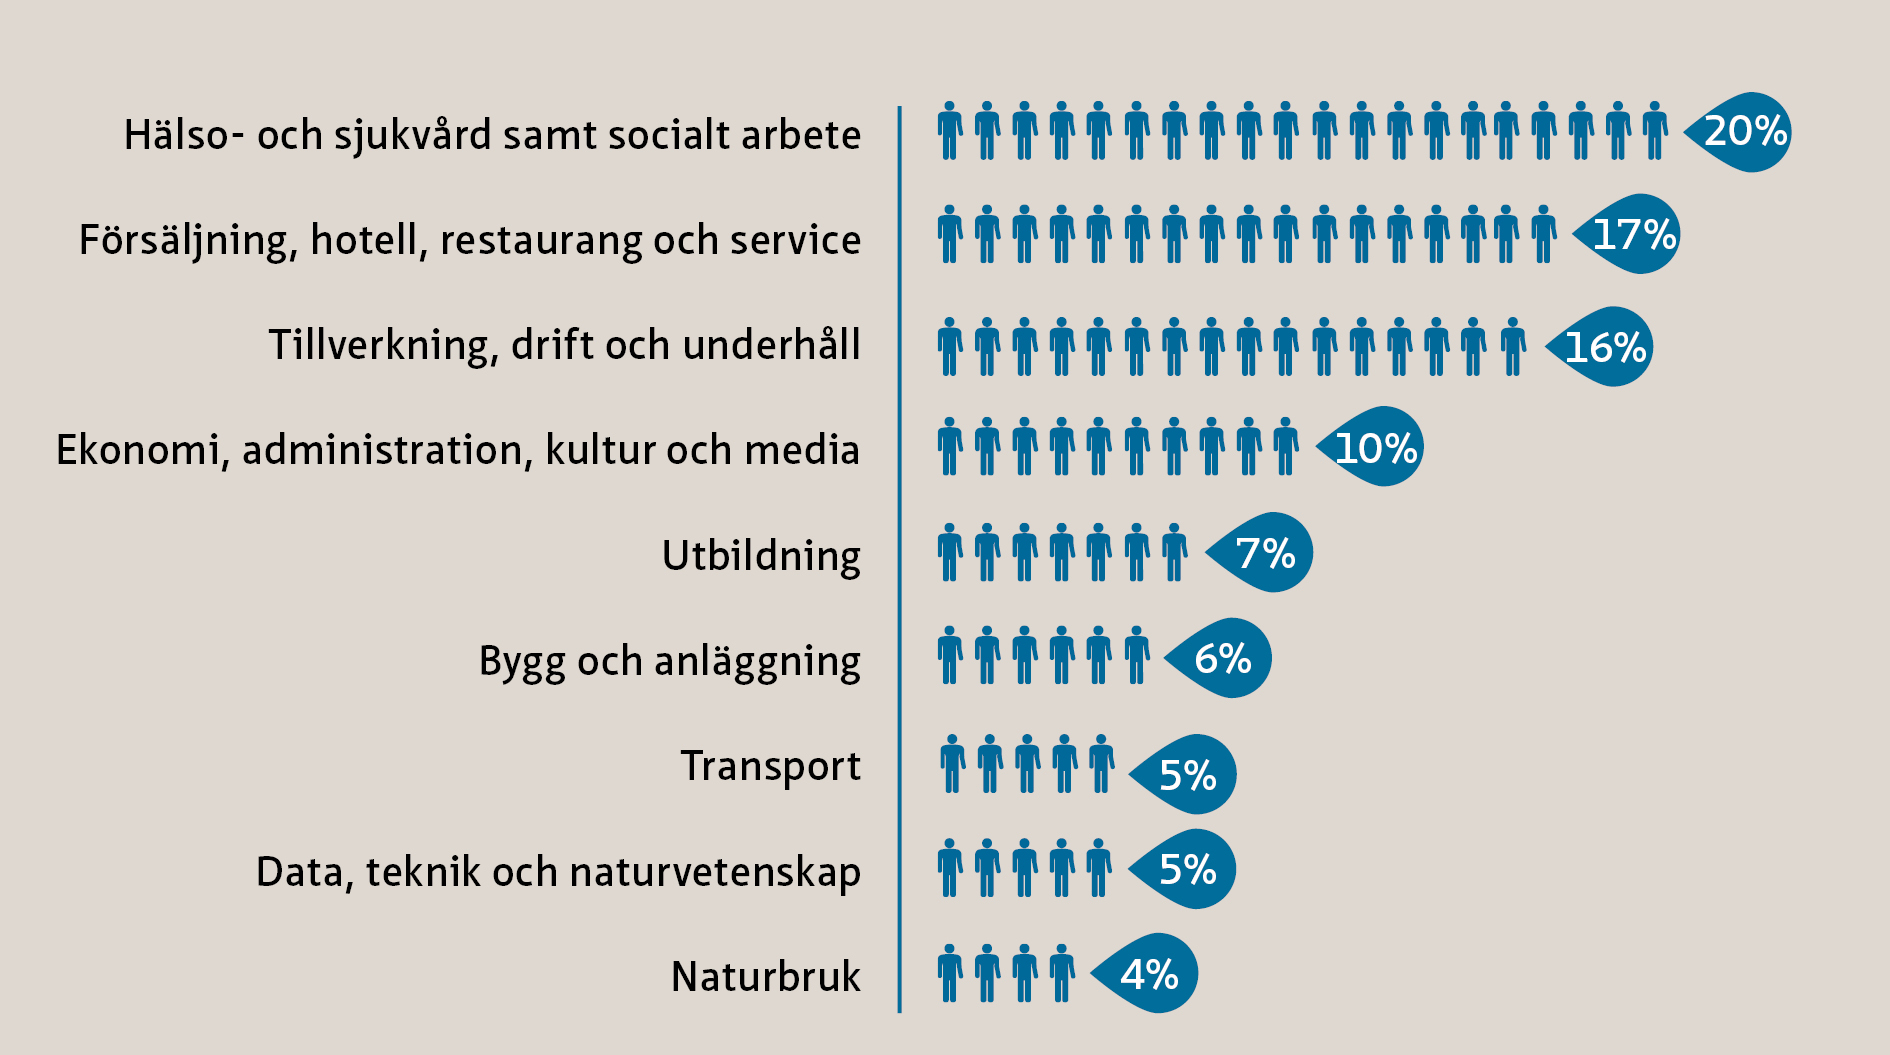 Här arbetar flest idag Bilden visar hur antalet anställda i Kalmar län fördelar sig mellan olika yrkesområden. Flest anställda finns inom Hälso- och sjukvård samt socialt arbete.